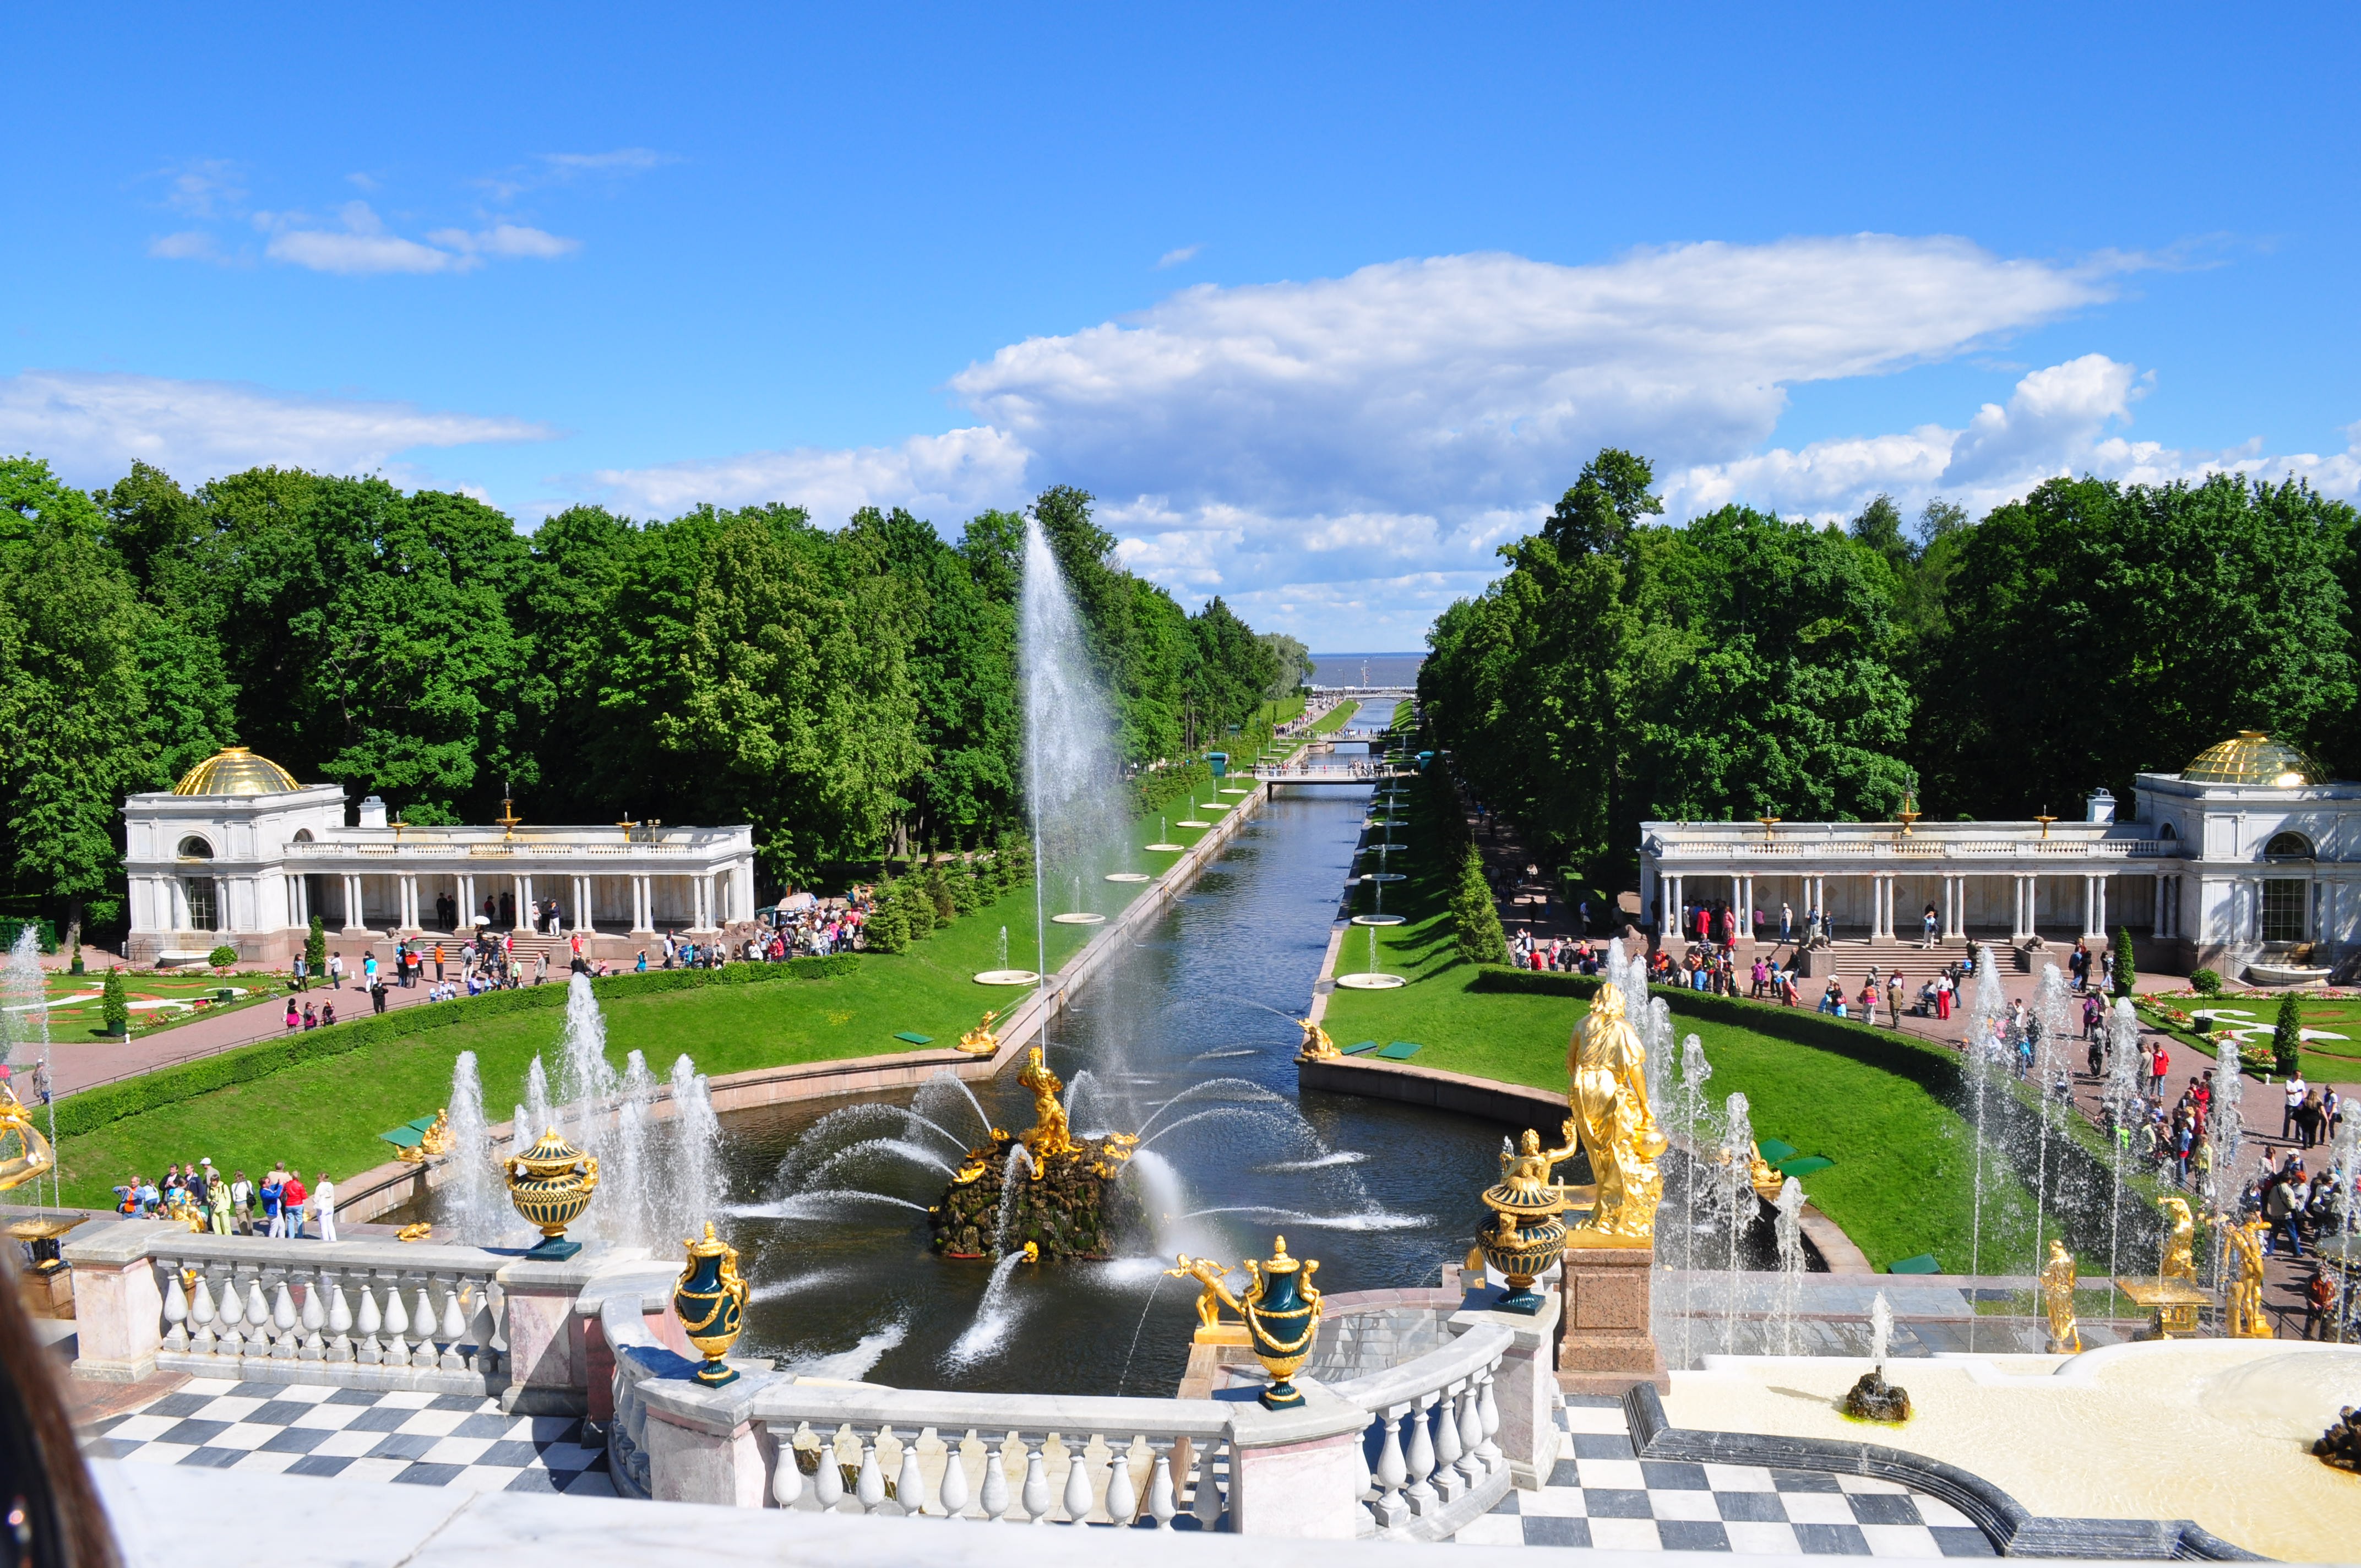 ロシア・サンクトペテルブルク郊外ペテルゴフの見どころ特集！ピョートル大帝の野心が造らせた夏の宮殿